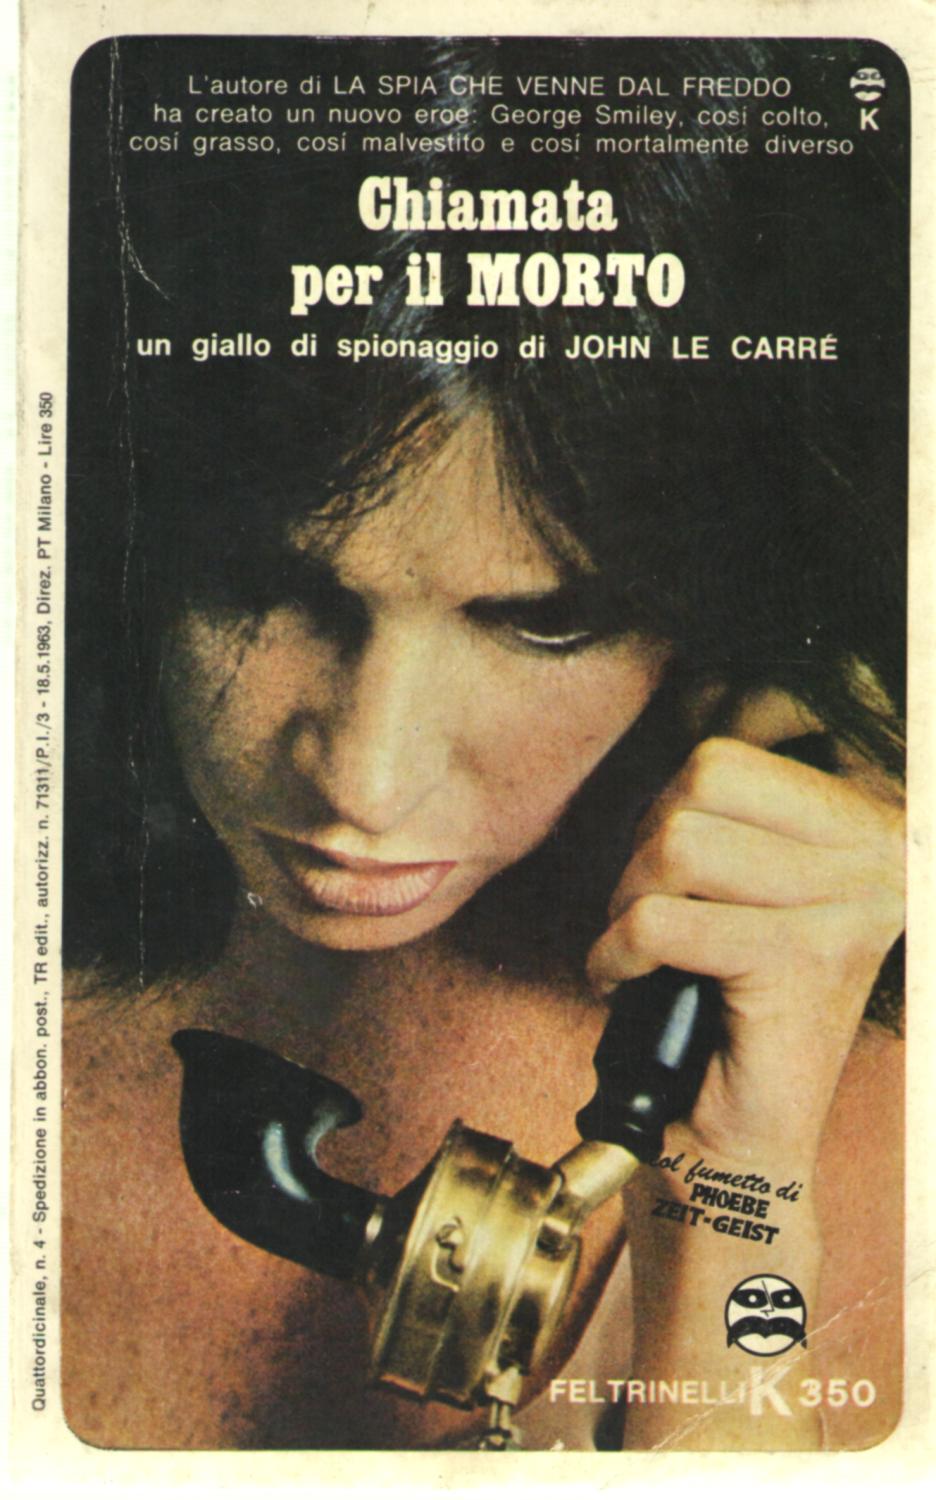 Chaimata per il morto - Le Carré (K 350/Feltrinelli) (image)